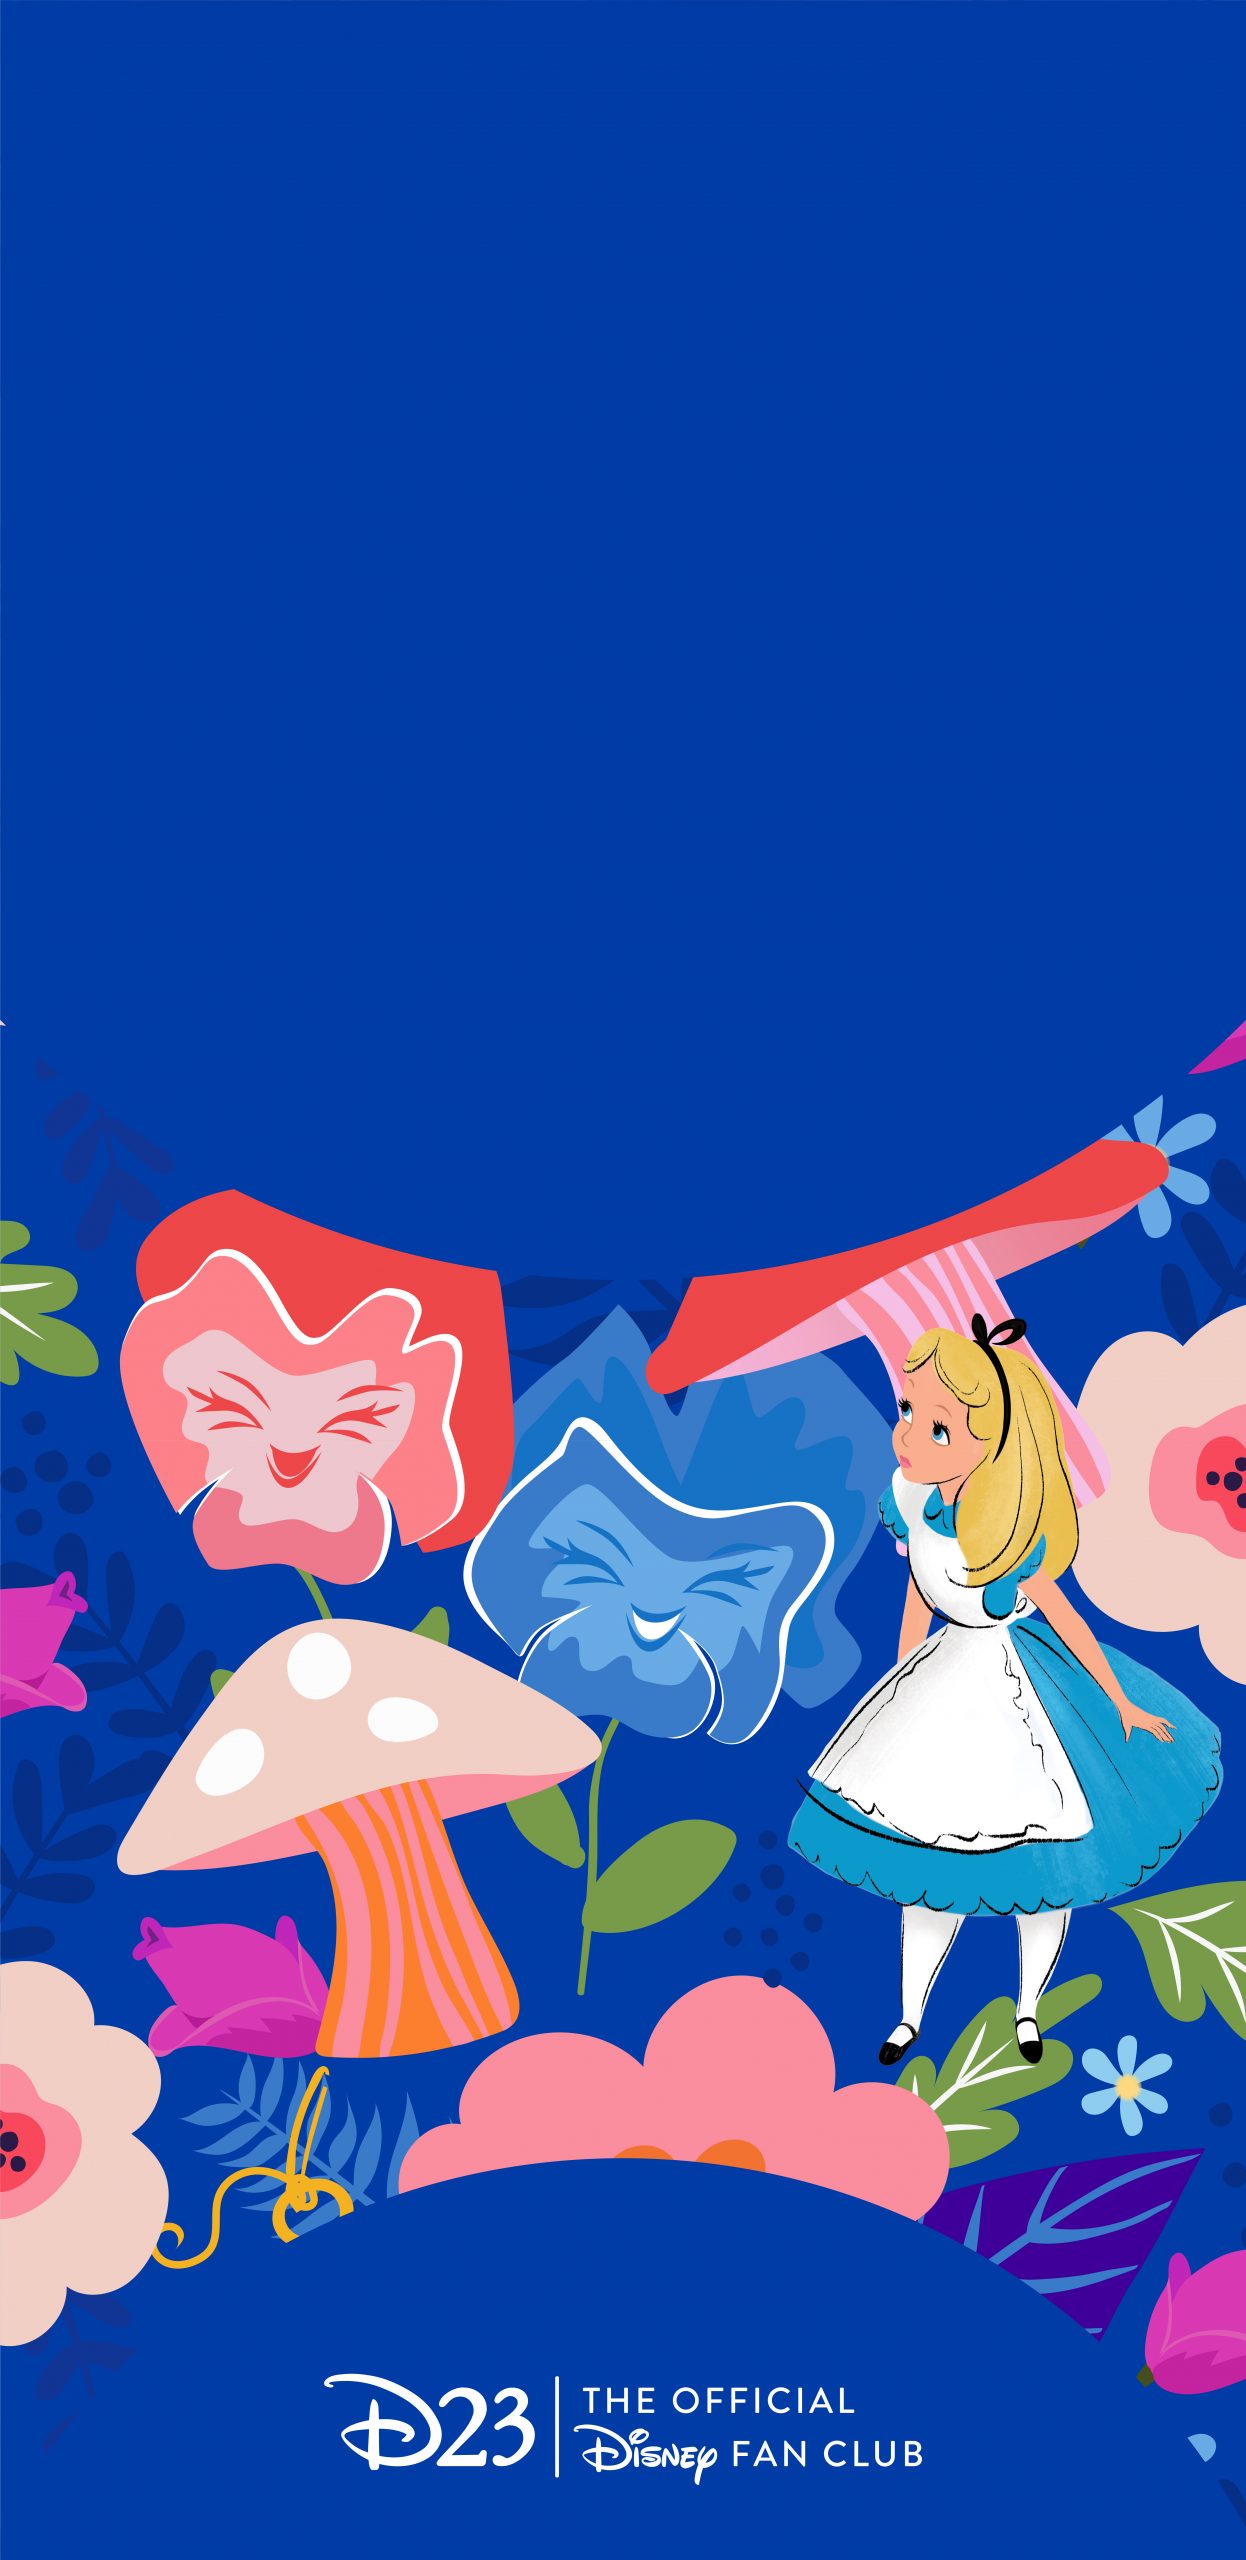 Alice In Wonderland IPhone Wallpaper  IPhone Wallpapers  iPhone Wallpapers